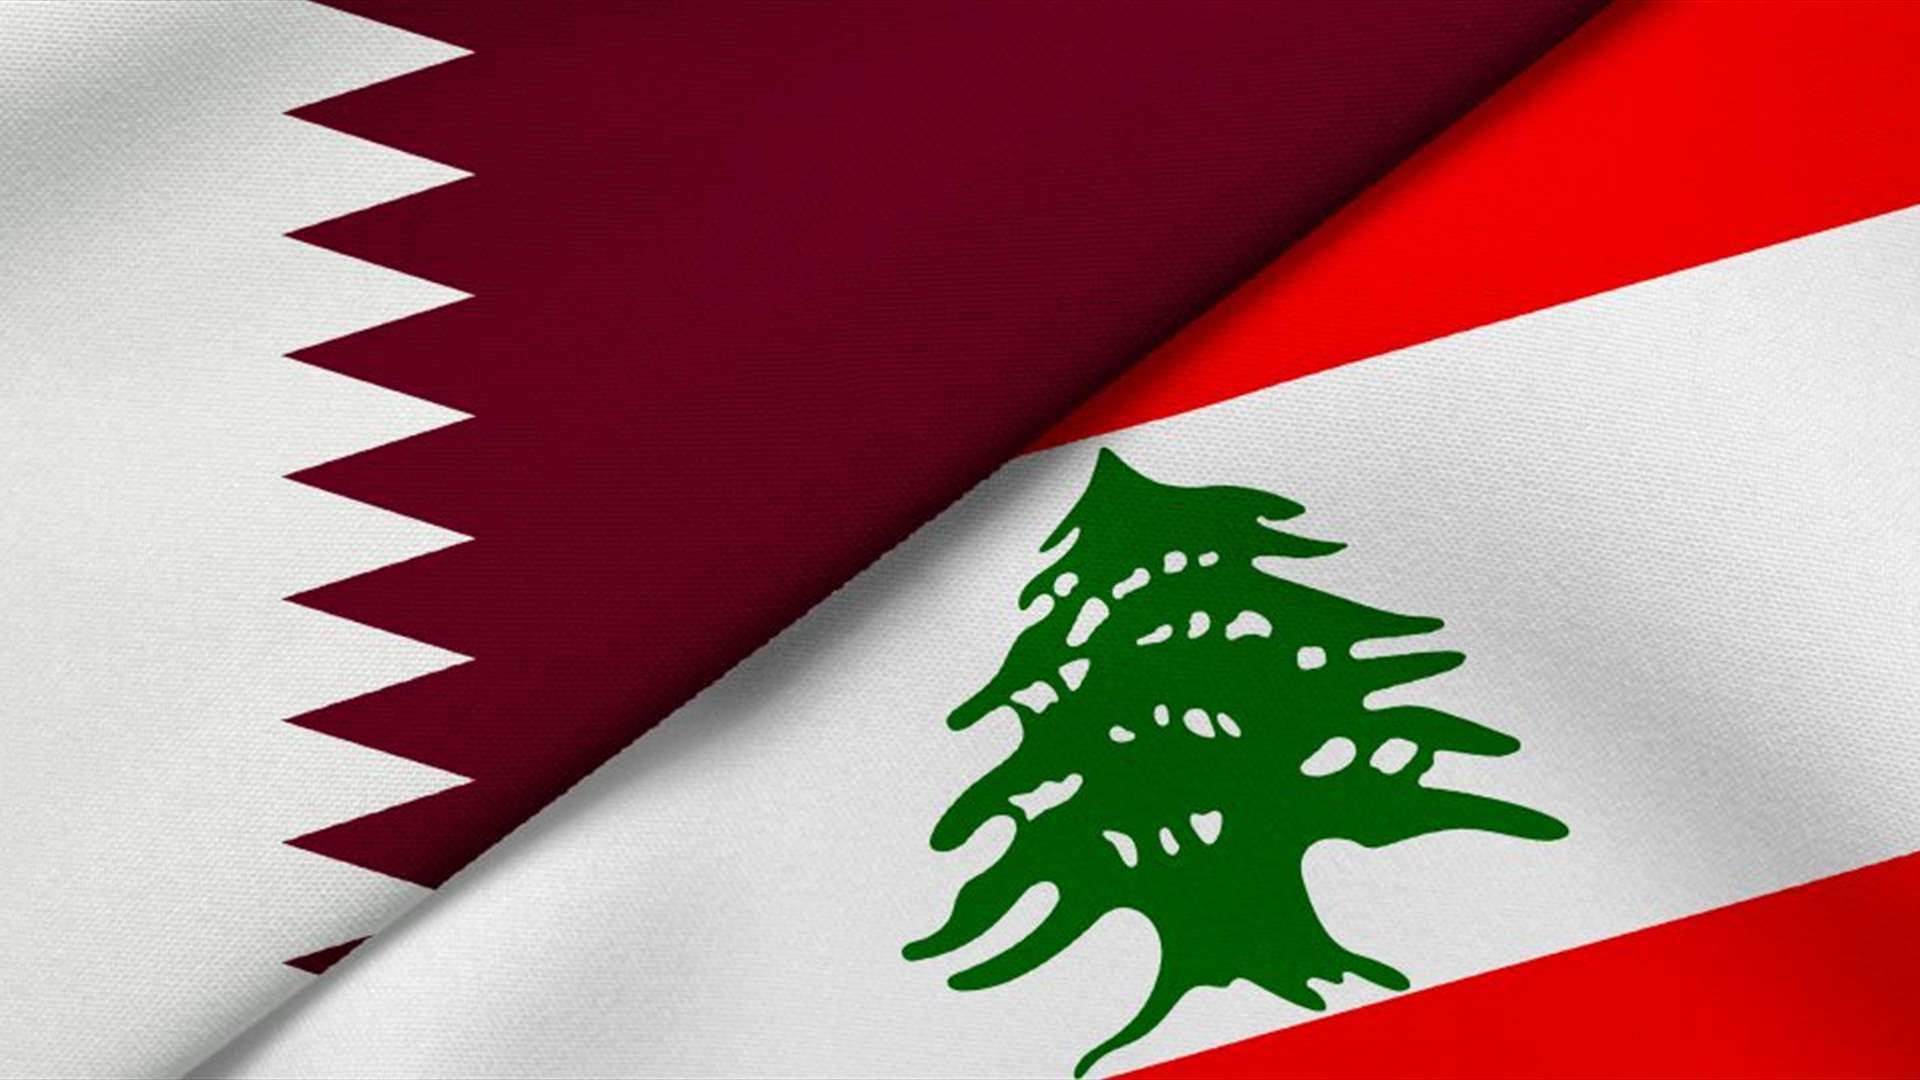 Qatari envoy visits Lebanon again as presidential stalemate persists